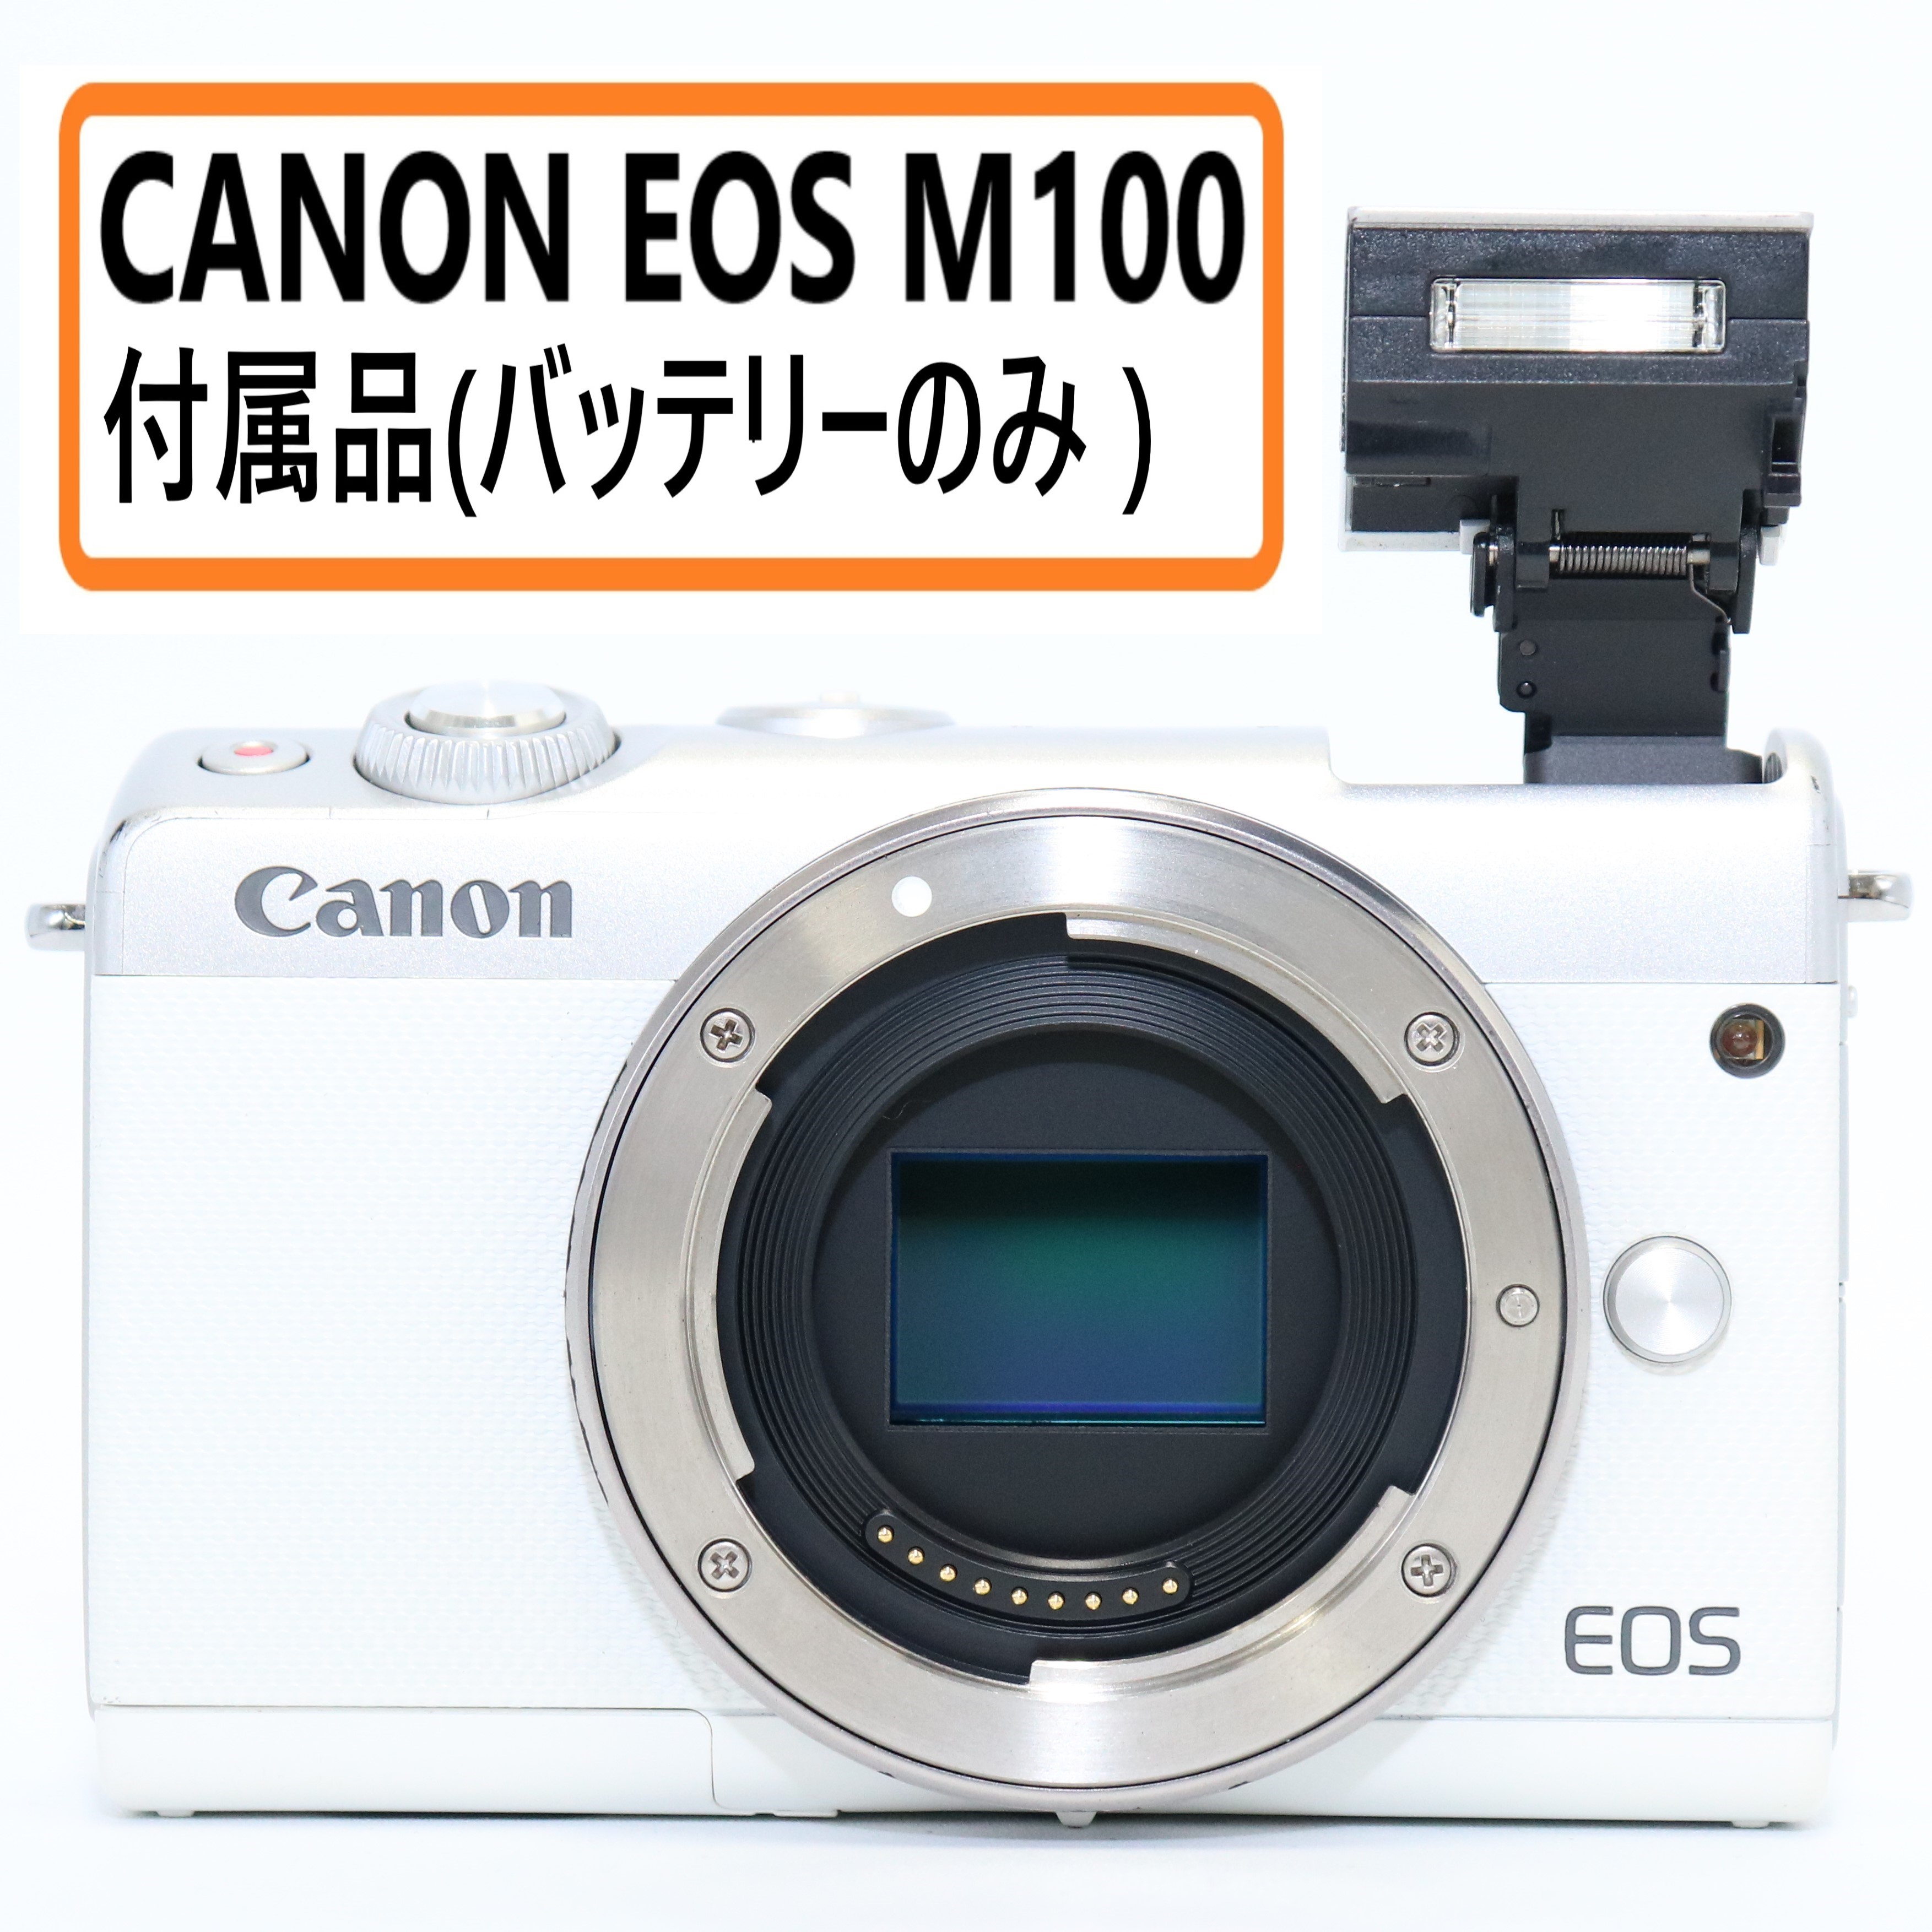 クーポン利用&送料無料 Canon ミラーレス一眼カメラ EOS M100 ボディー